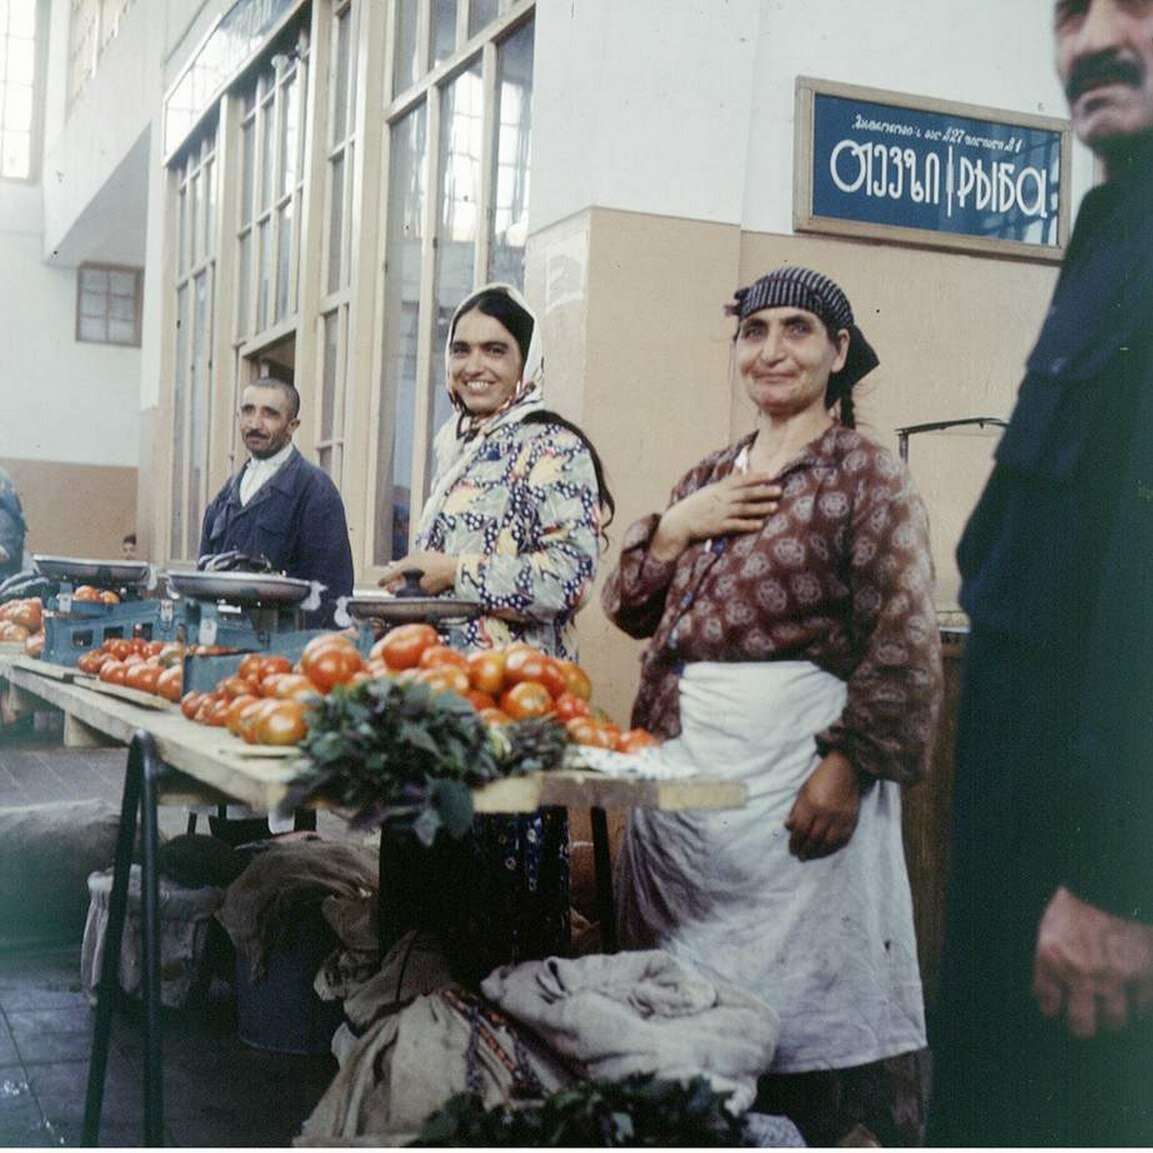 базары в грузии